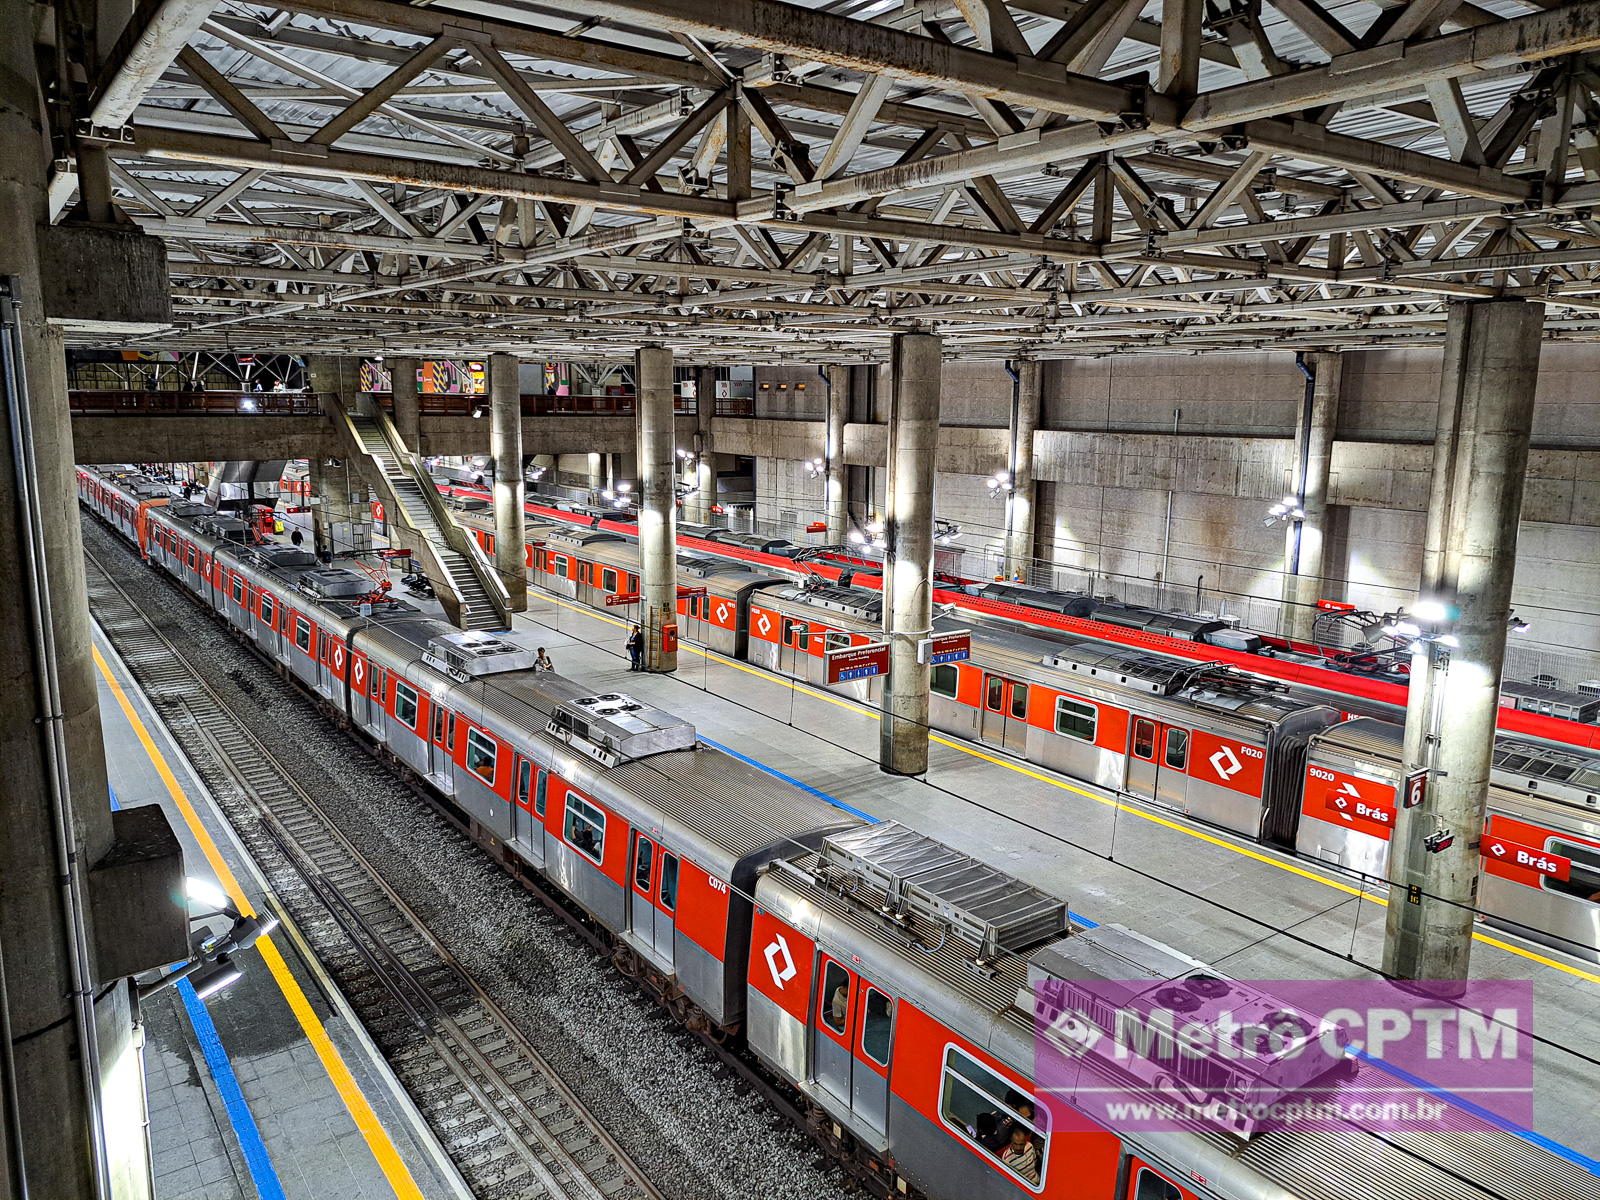 Estação Brás terá sistema de iluminação modernizado por R$ 663 mil - Metrô  CPTM